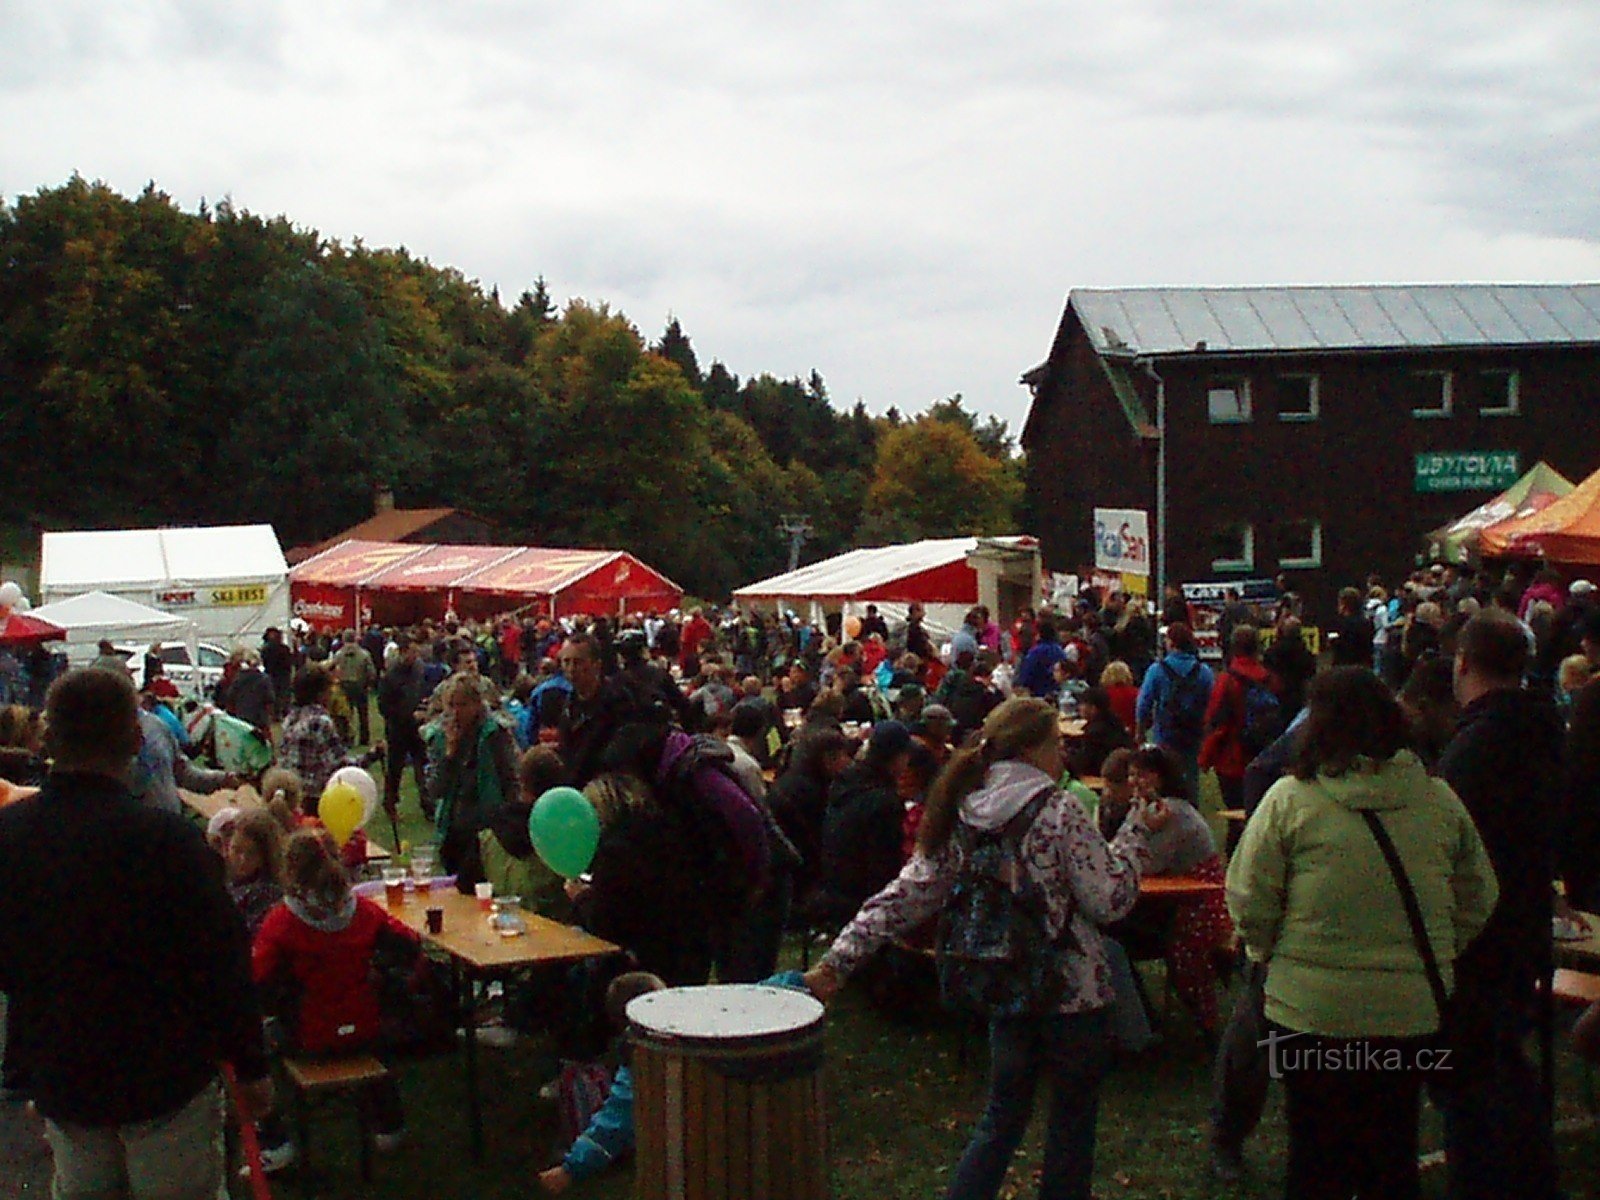 Lễ hội Oktoberfest ở vùng đồng bằng bên dưới Ještěd 28.9.-30.9.